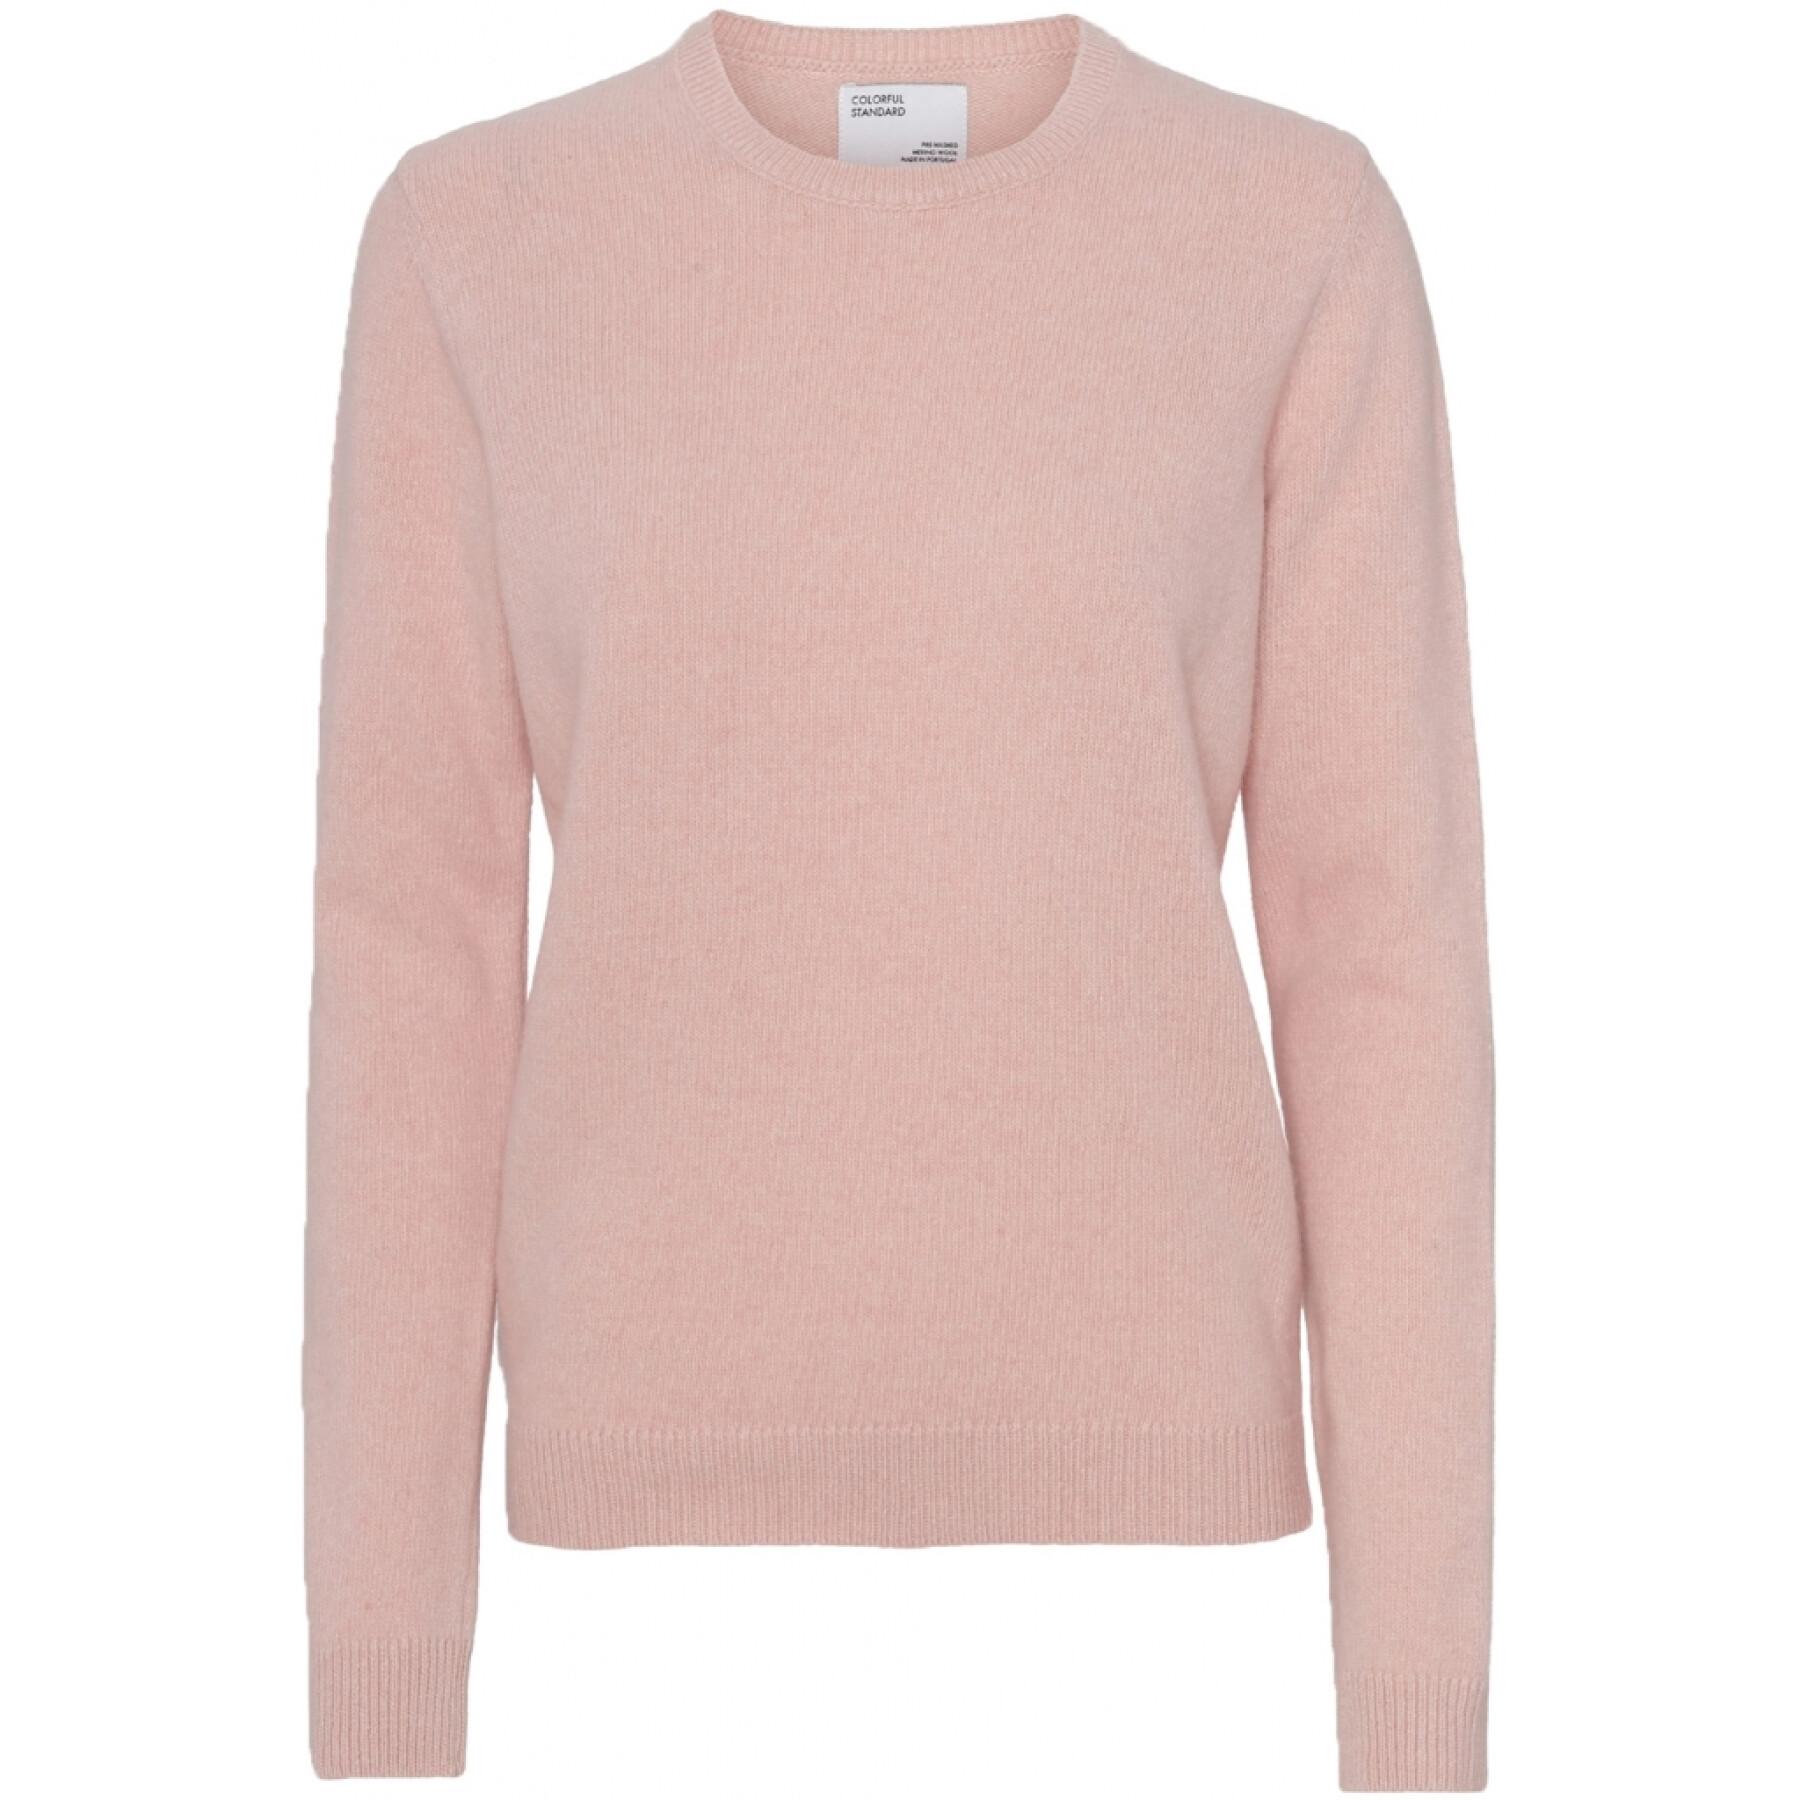 Damski wełniany sweter z okrągłym dekoltem Colorful Standard Classic Merino faded pink 2020 color